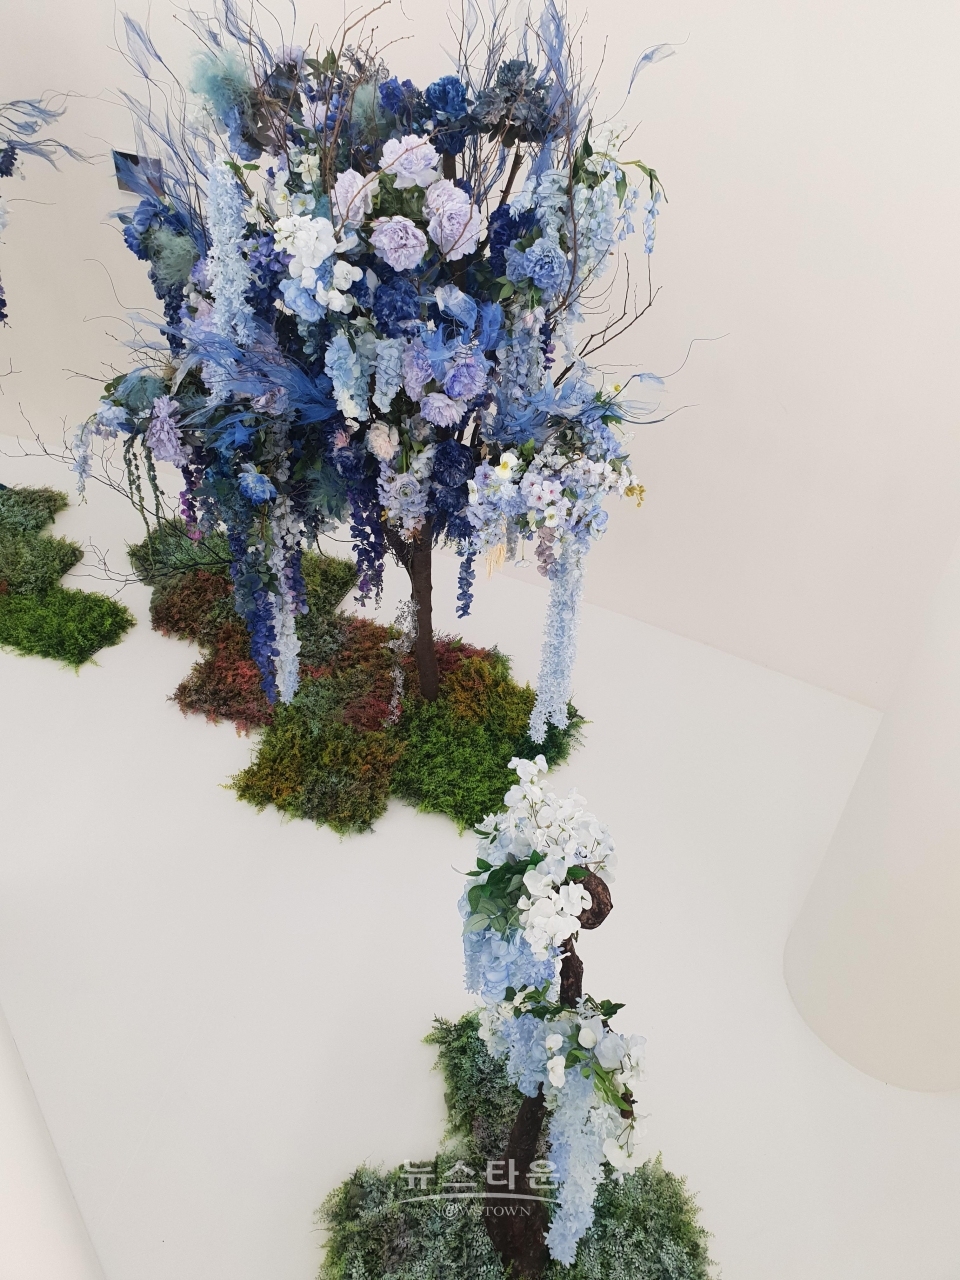 구조물 위에서 내려다 보이는 형태로 구성된 강은영 작가의 Blue Alkanet Tree 설치 작품